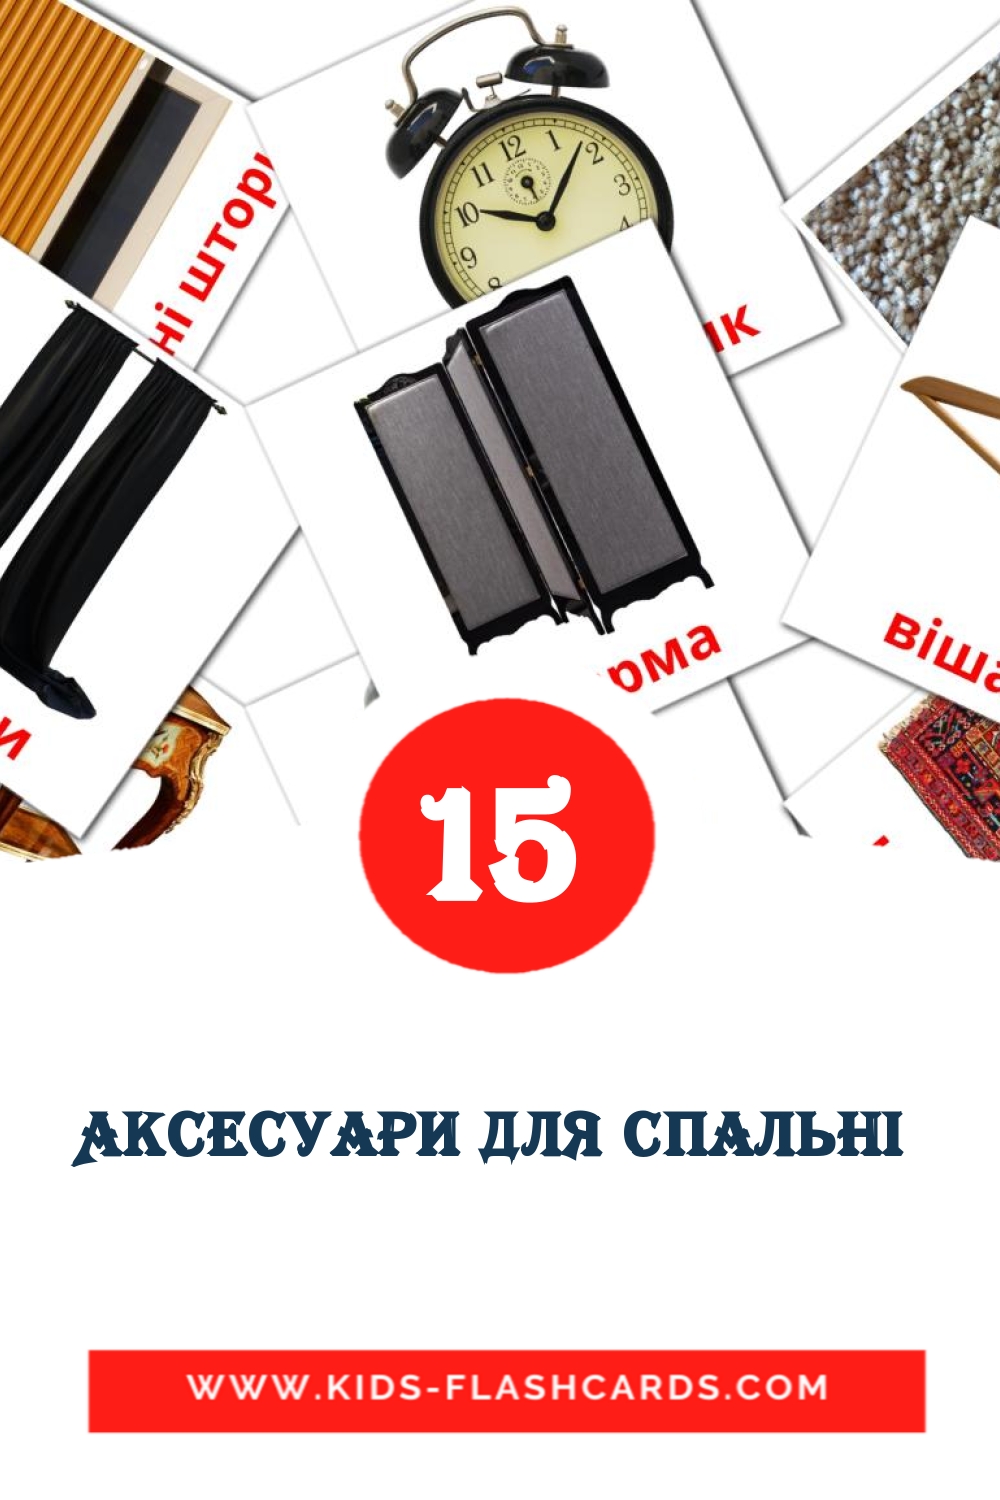 Аксесуари для спальні  на украинском для Детского Сада (18 карточек)